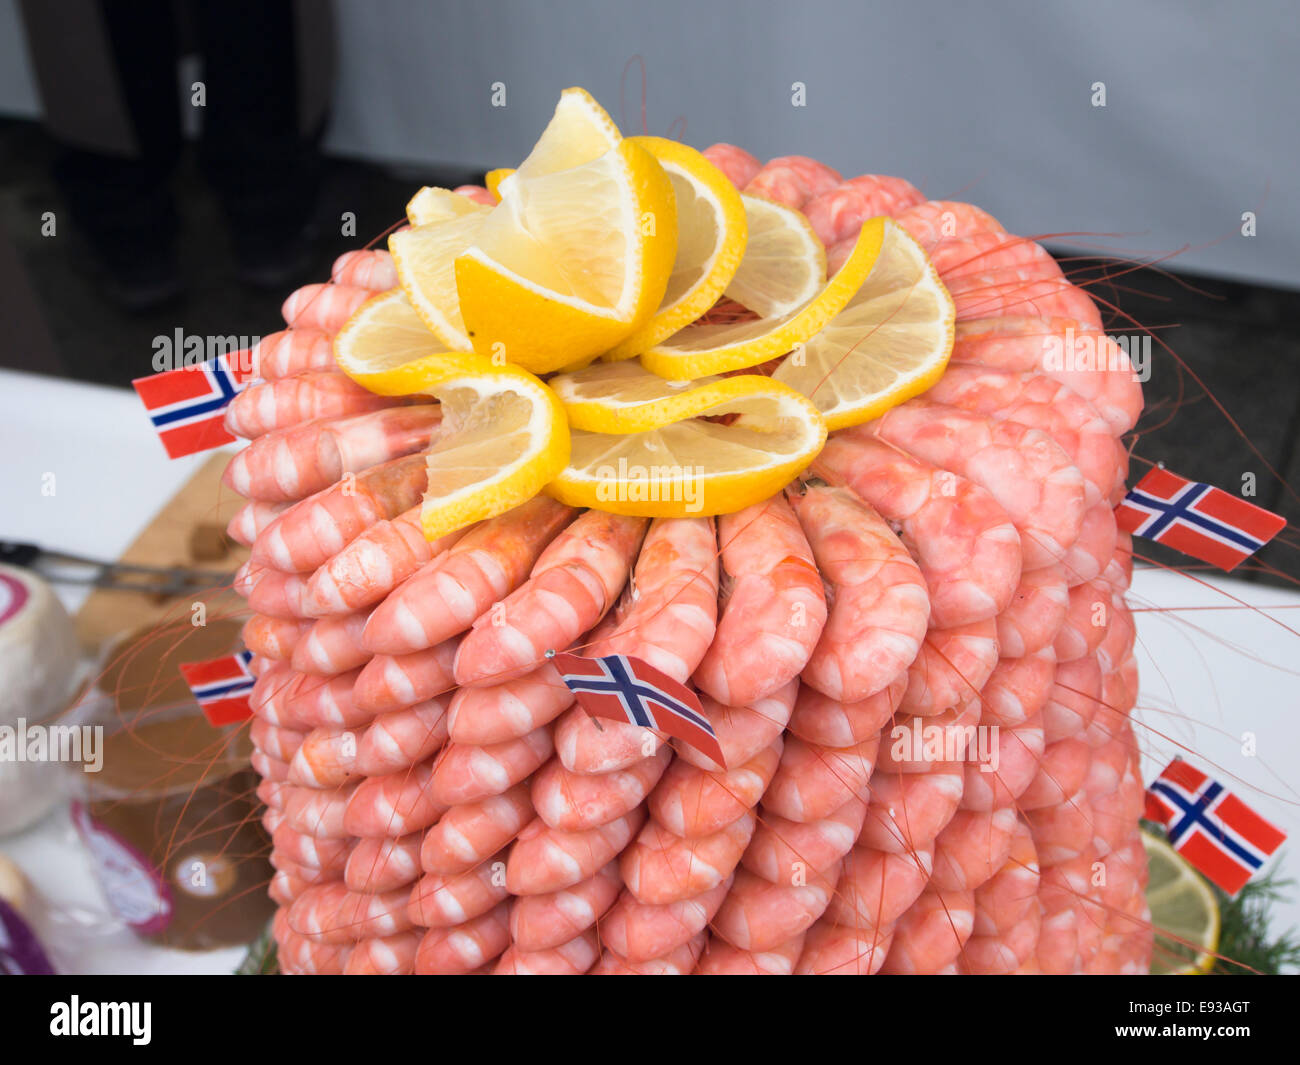 Bauernmarkt in Oslo, die Hauptstadt von Norwegen, Fisch und Meeresfrüchte  am Display, gekochte Garnelen Turm mit Zitrone Stockfotografie - Alamy